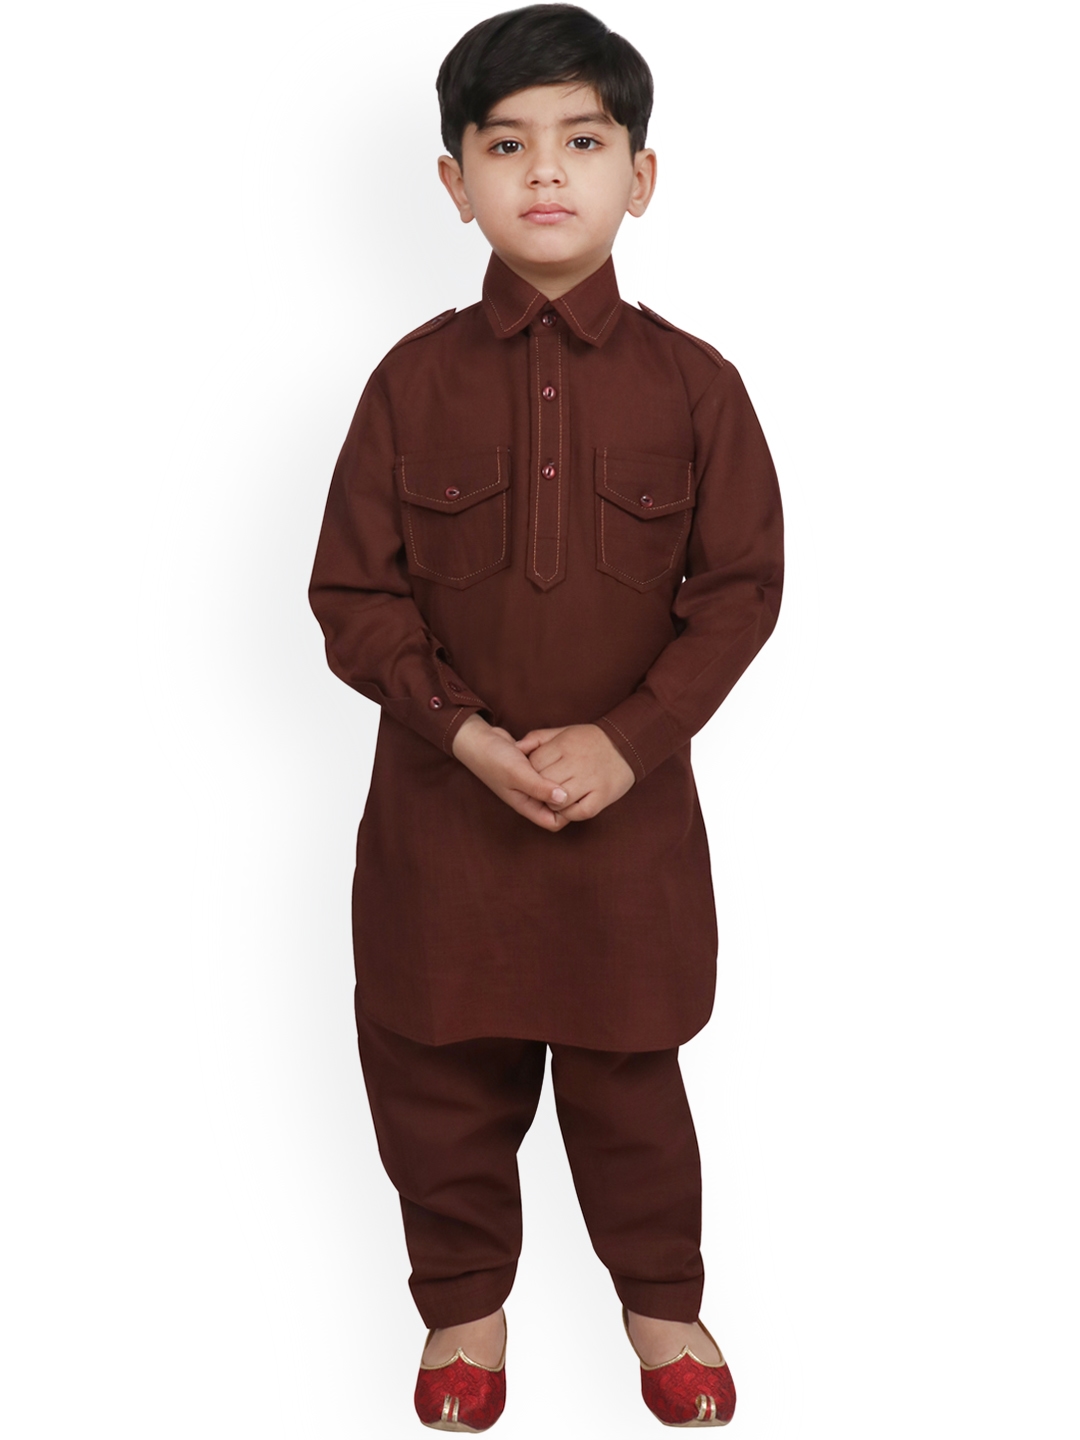 Boys Shirt Collar Pathani white Kurta Shalwar Kameez Eid 937 